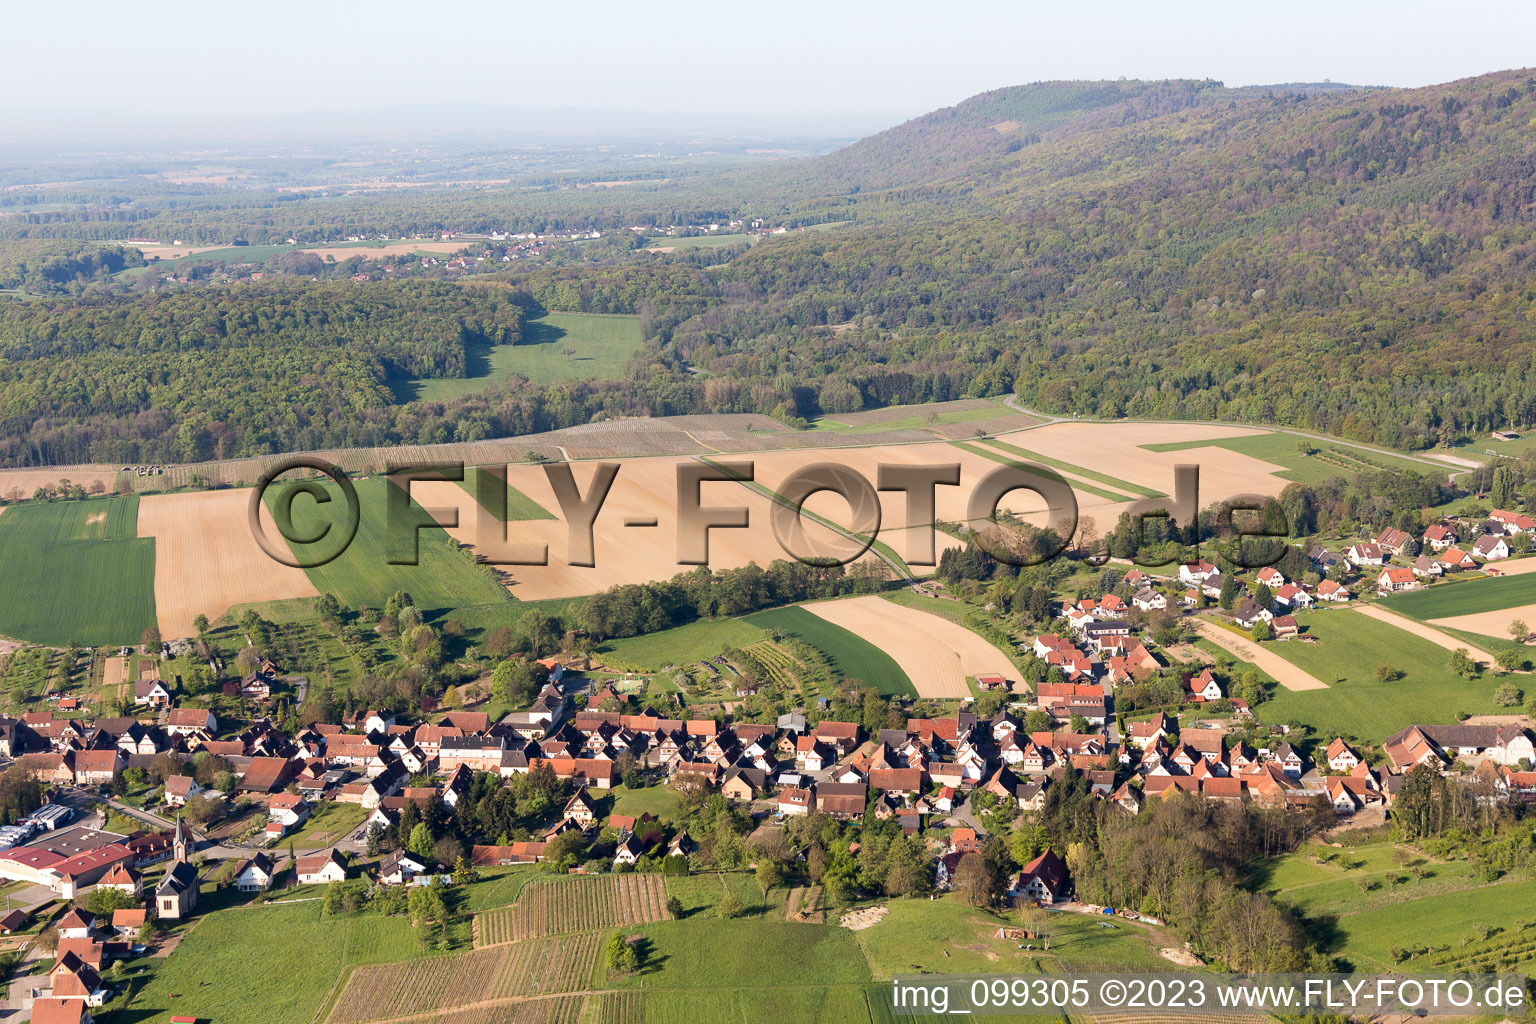 Cleebourg im Bundesland Bas-Rhin, Frankreich aus der Luft betrachtet